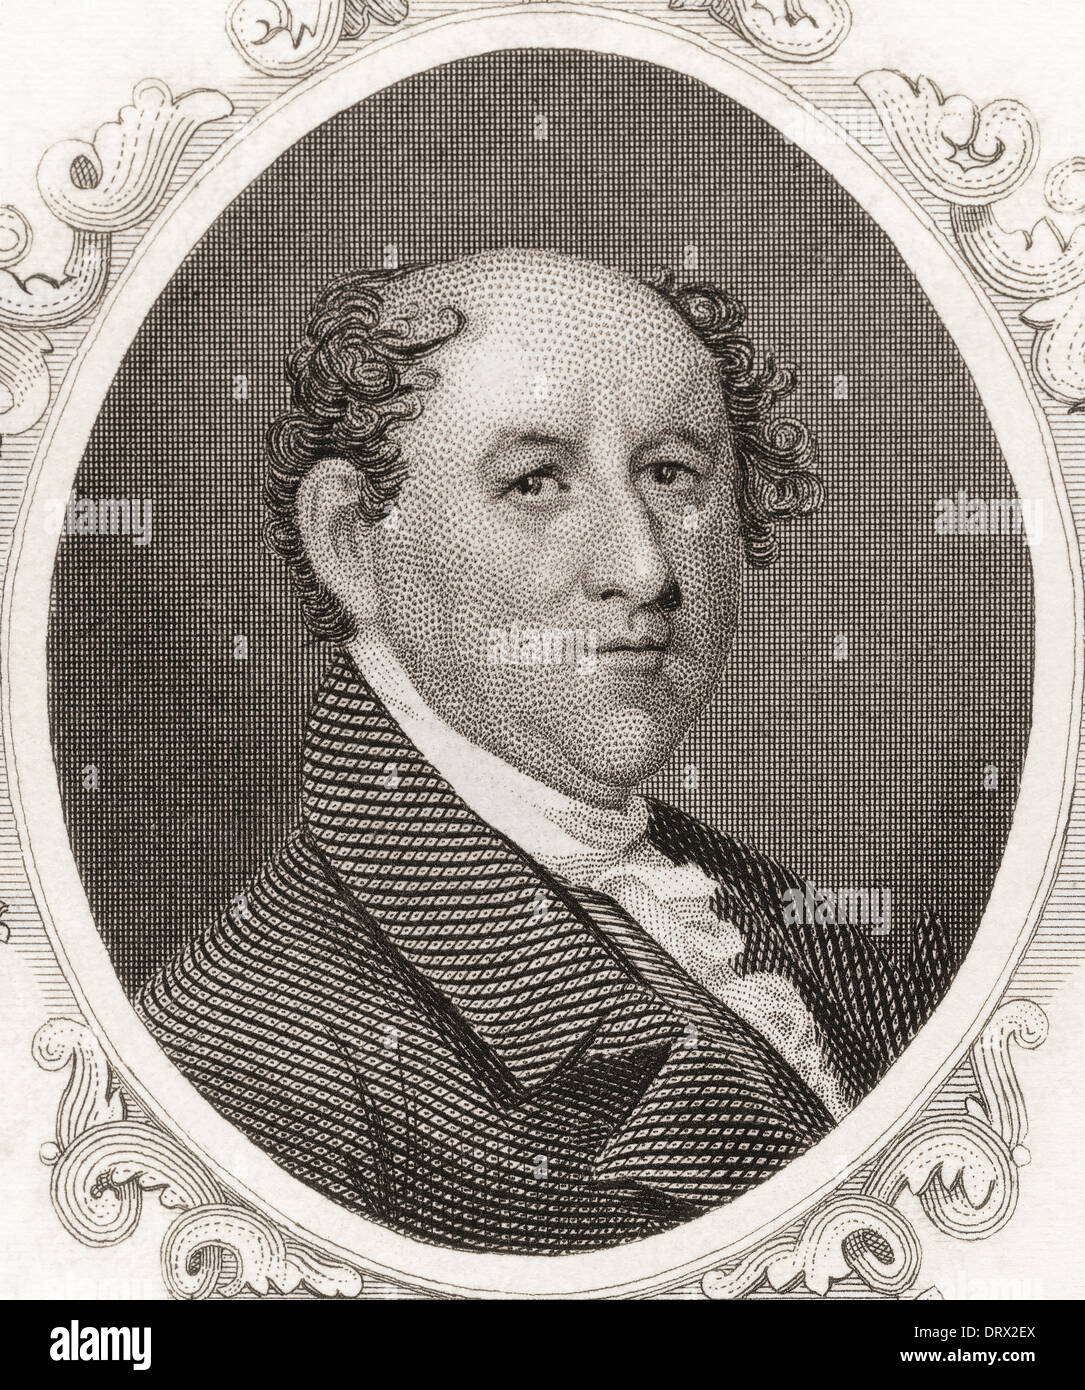 Rufus King, 1755 - 1827. Avvocato americano, politico, negli Stati Uniti il senatore, diplomatico e uno dei padri fondatori. Foto Stock